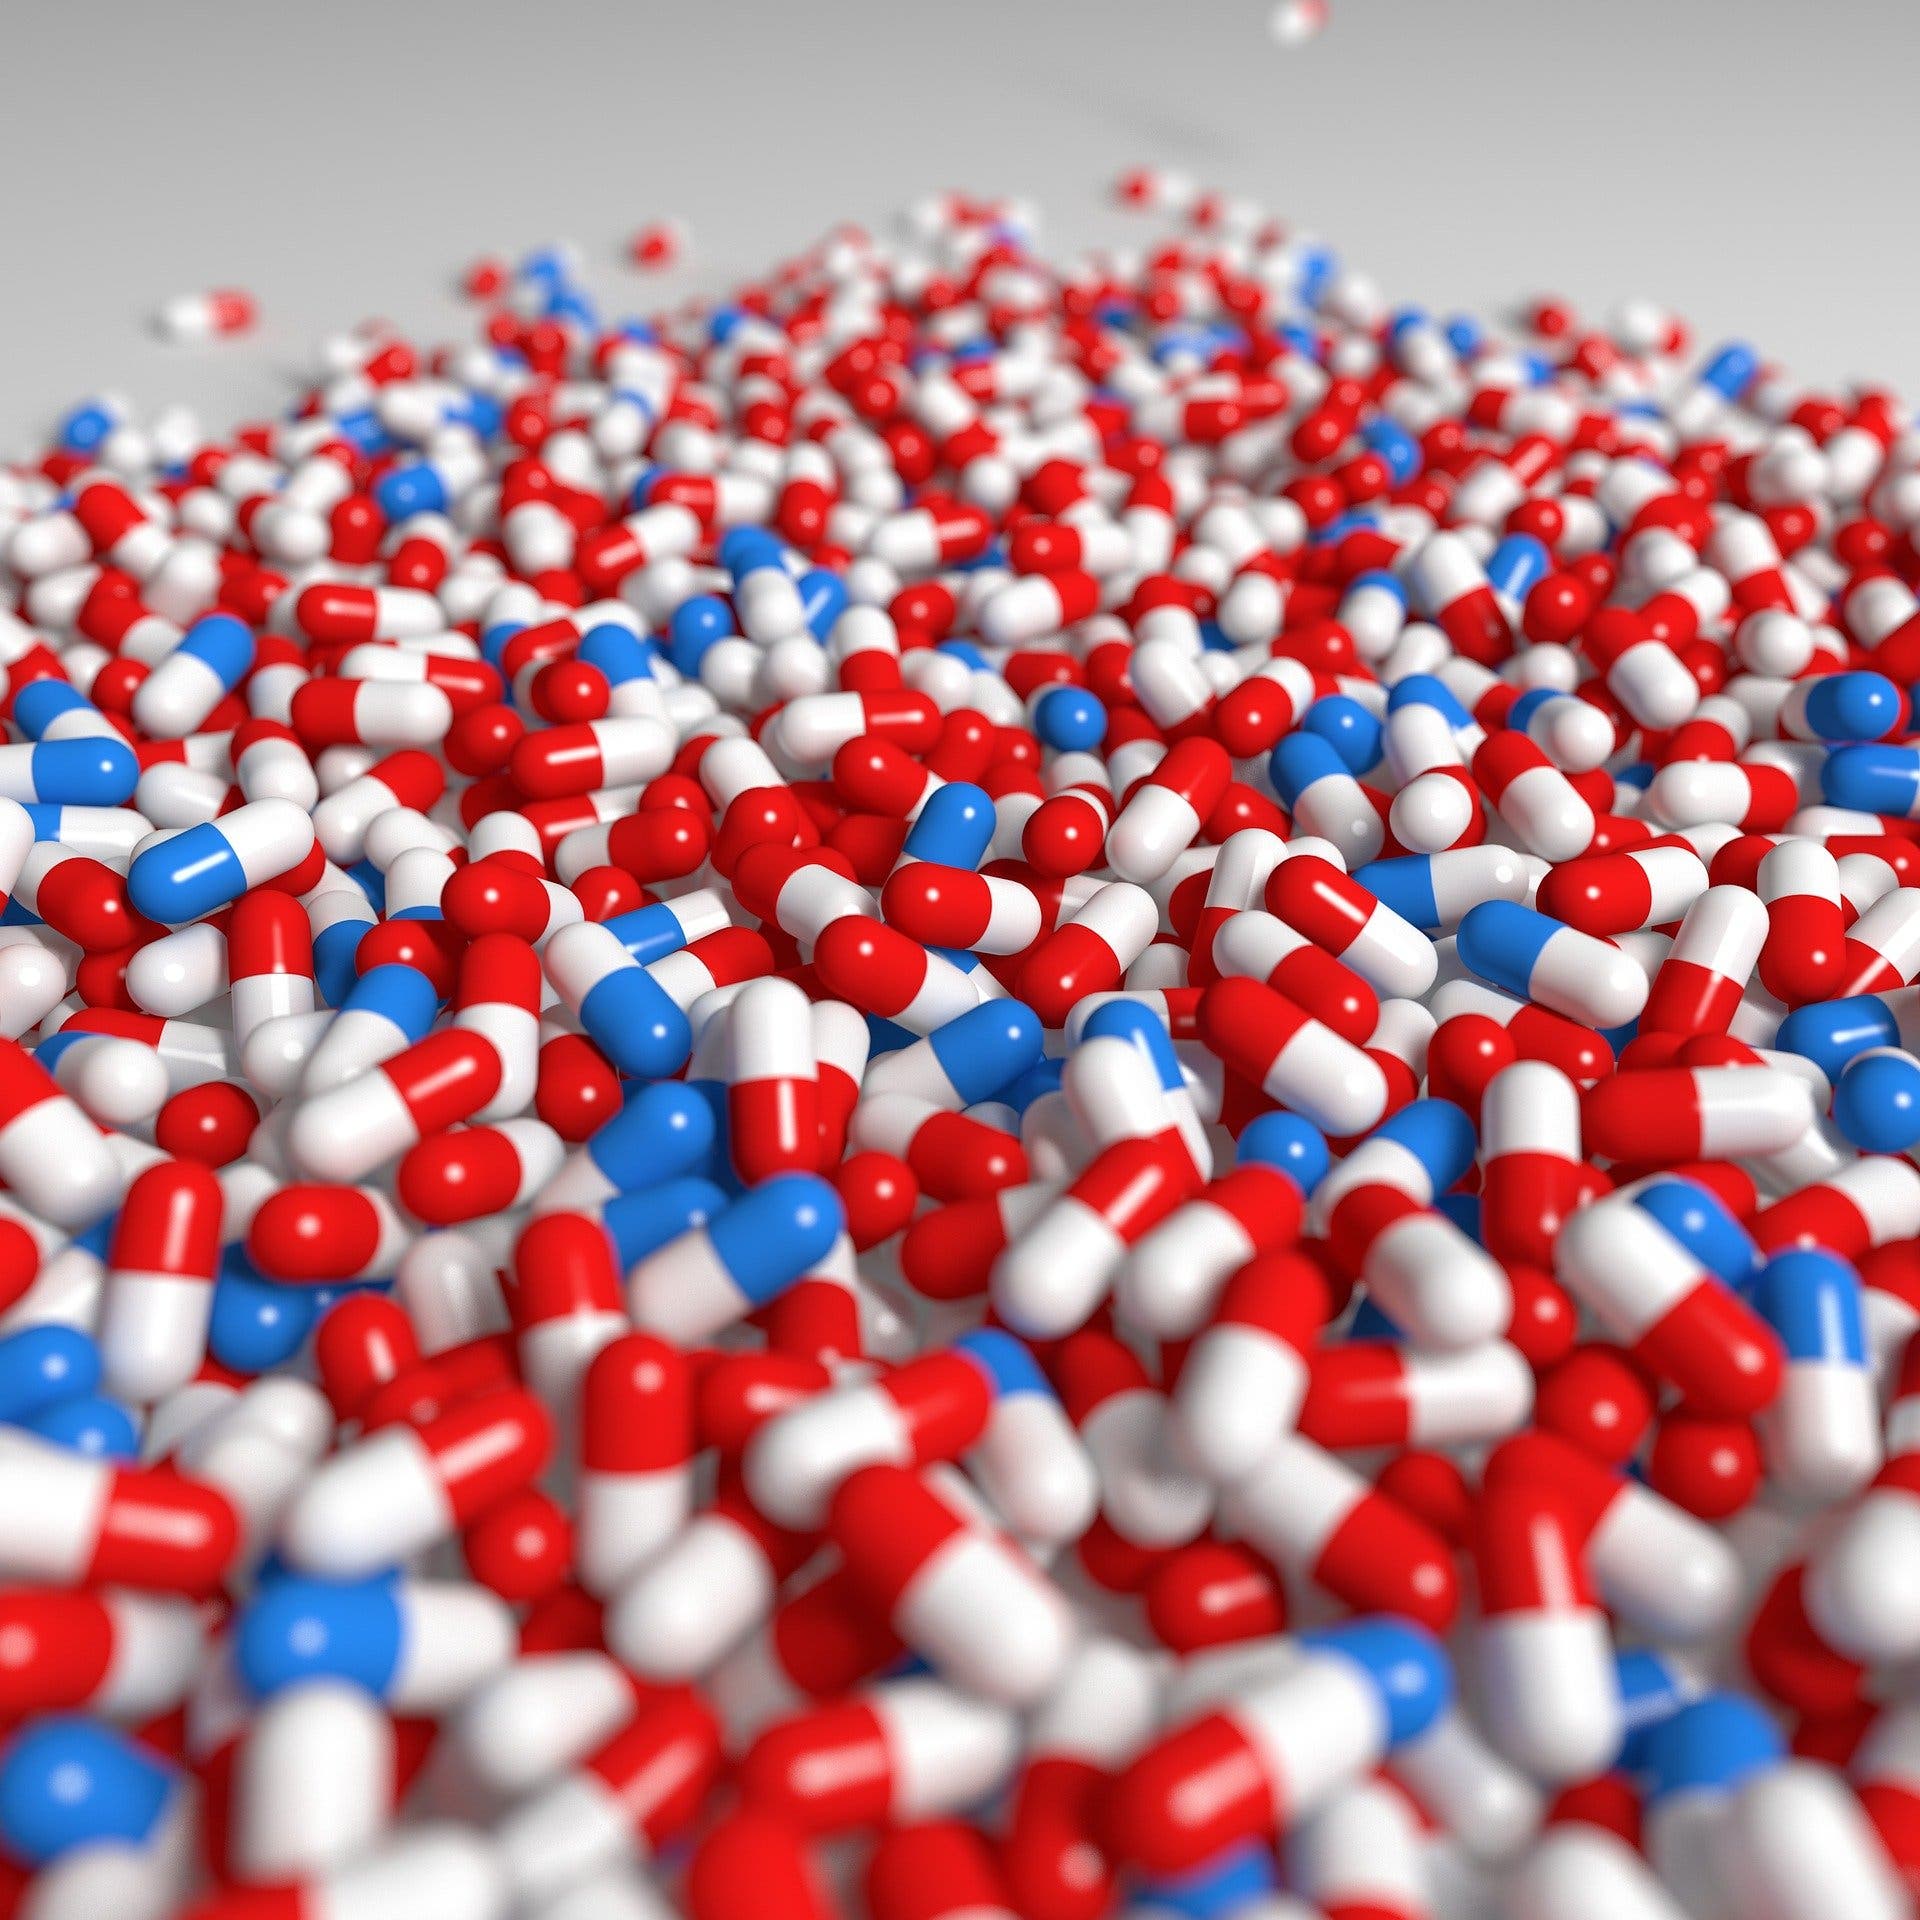 Farmacéuticos advierten sobre consumo medicamentos falsificados